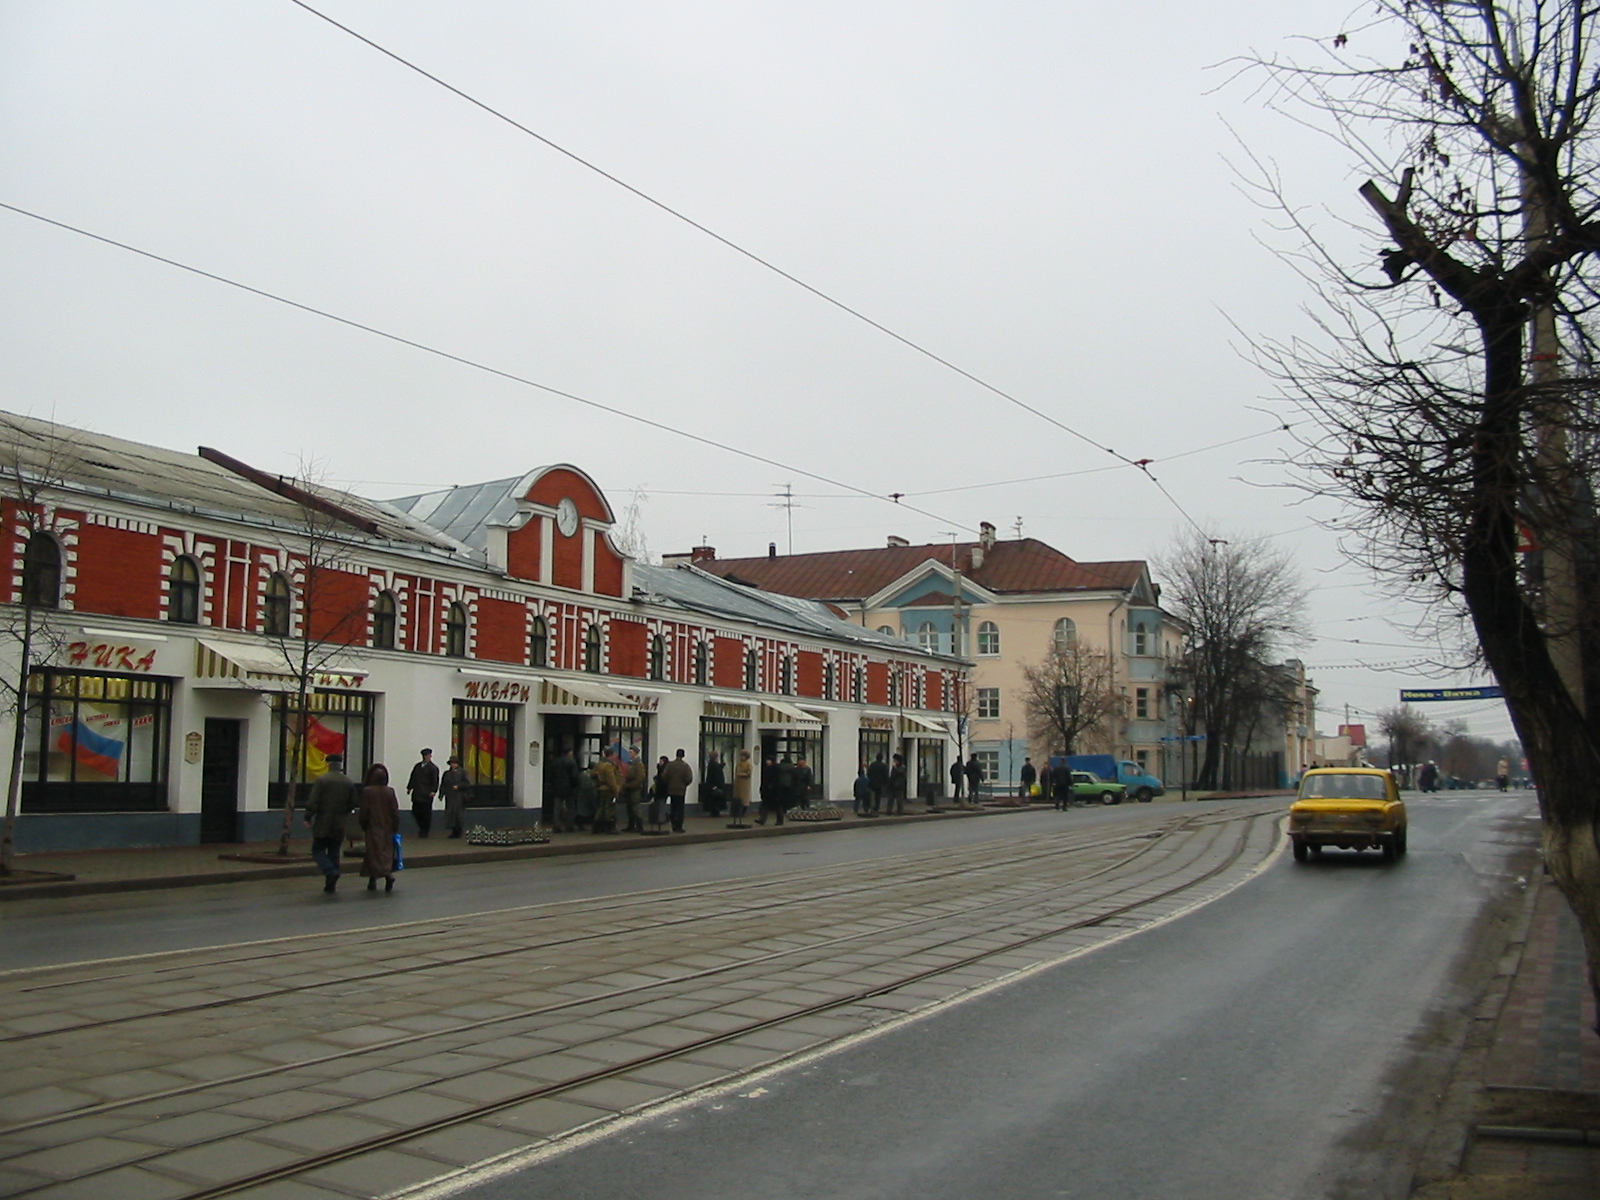 Вид улицы с трамвайным разьездом